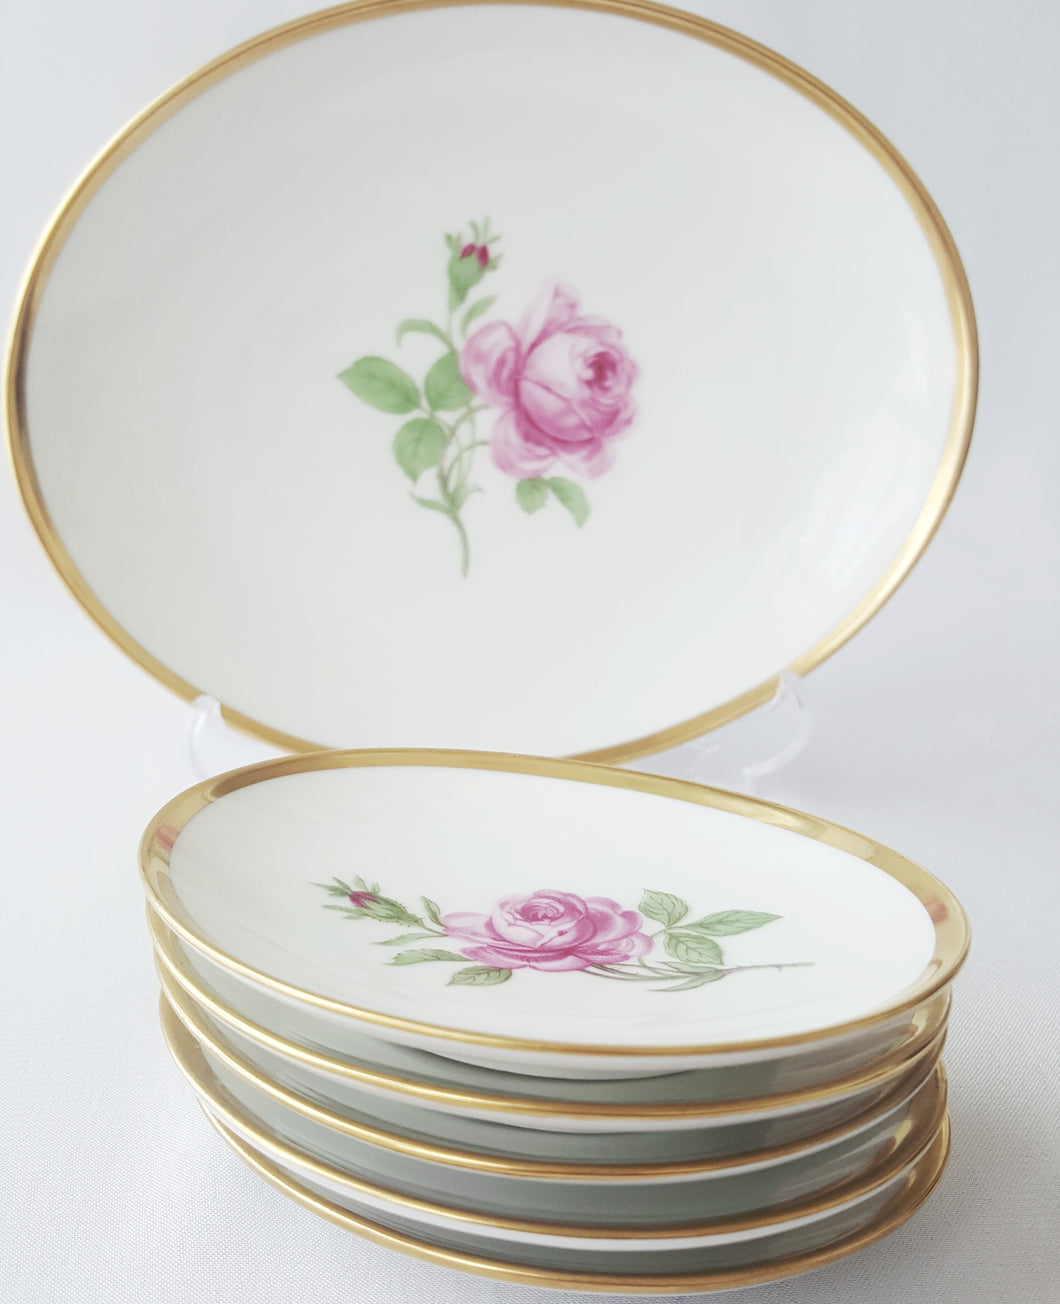 Vintage German Hand-painted Dessert Set, Vintage Porcelain